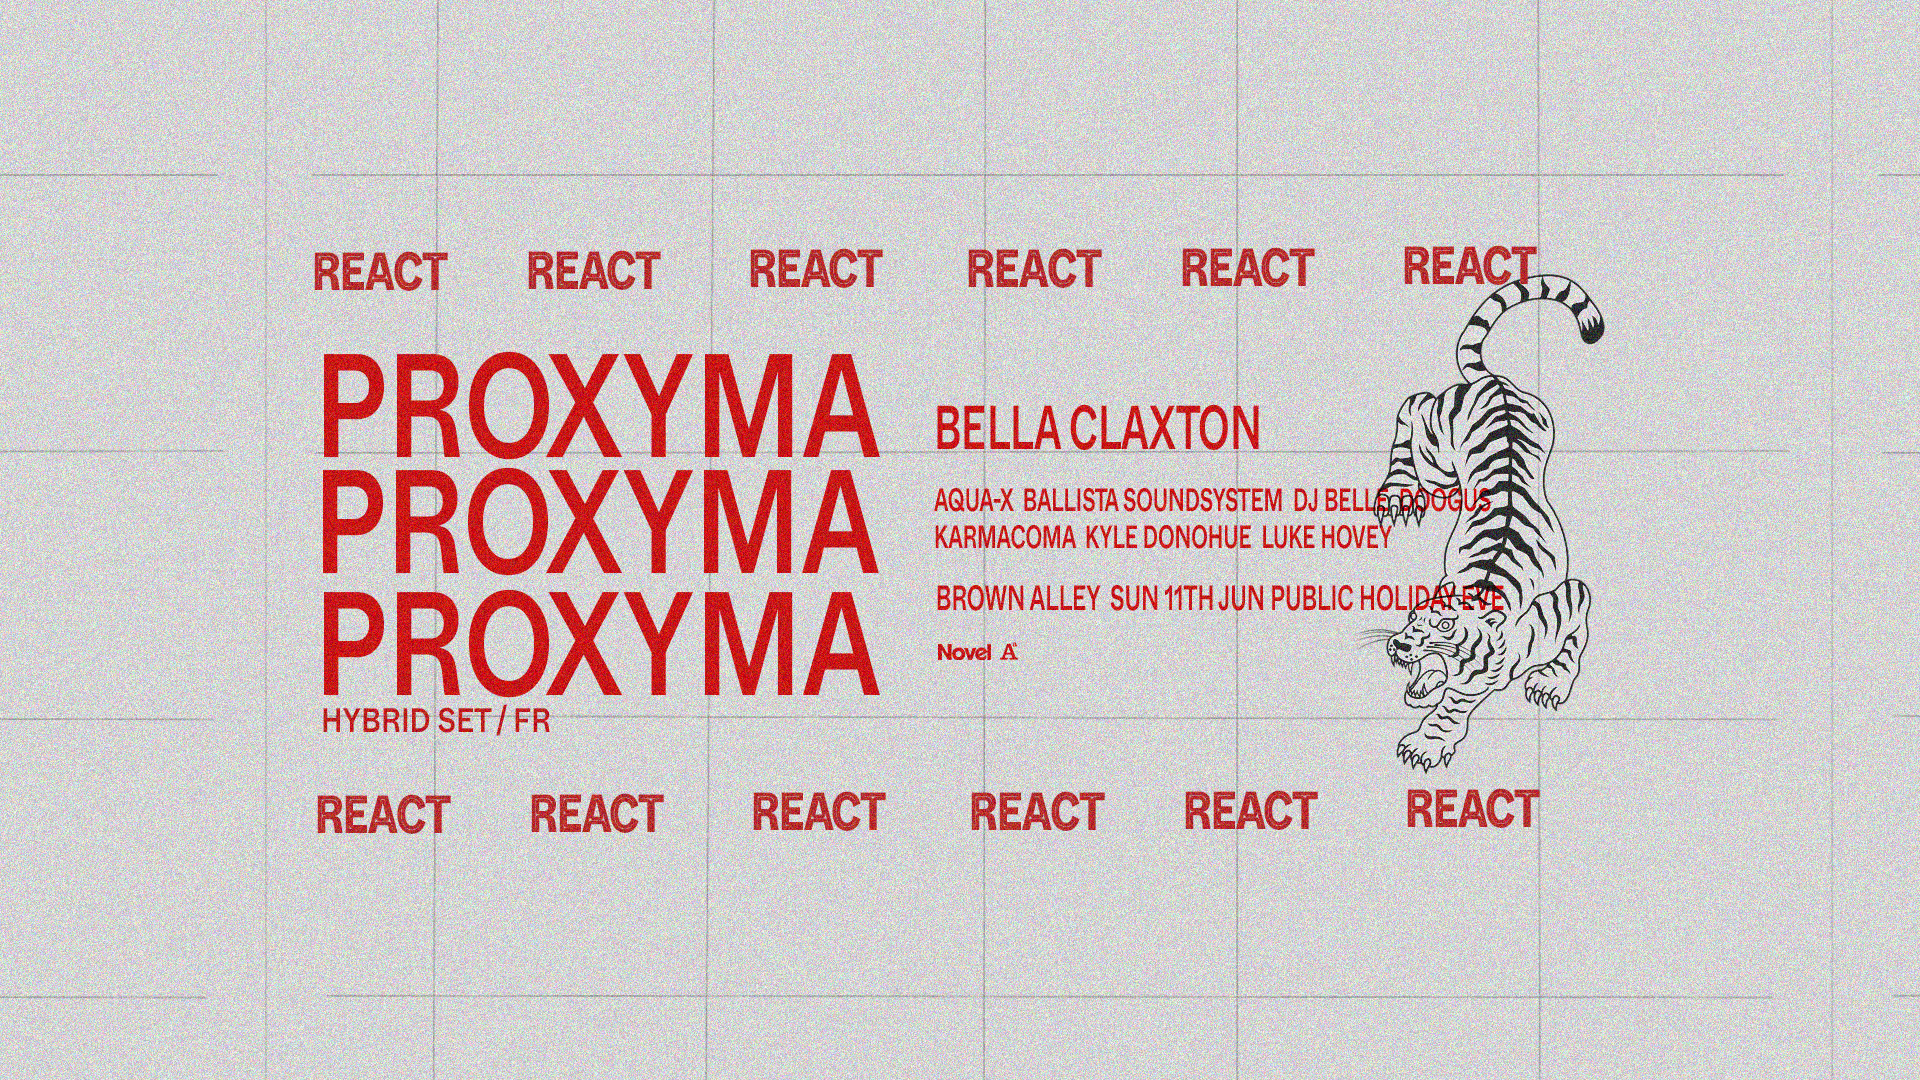 REACT with PROXYMA (Hybrid Set) - Public Holiday Eve